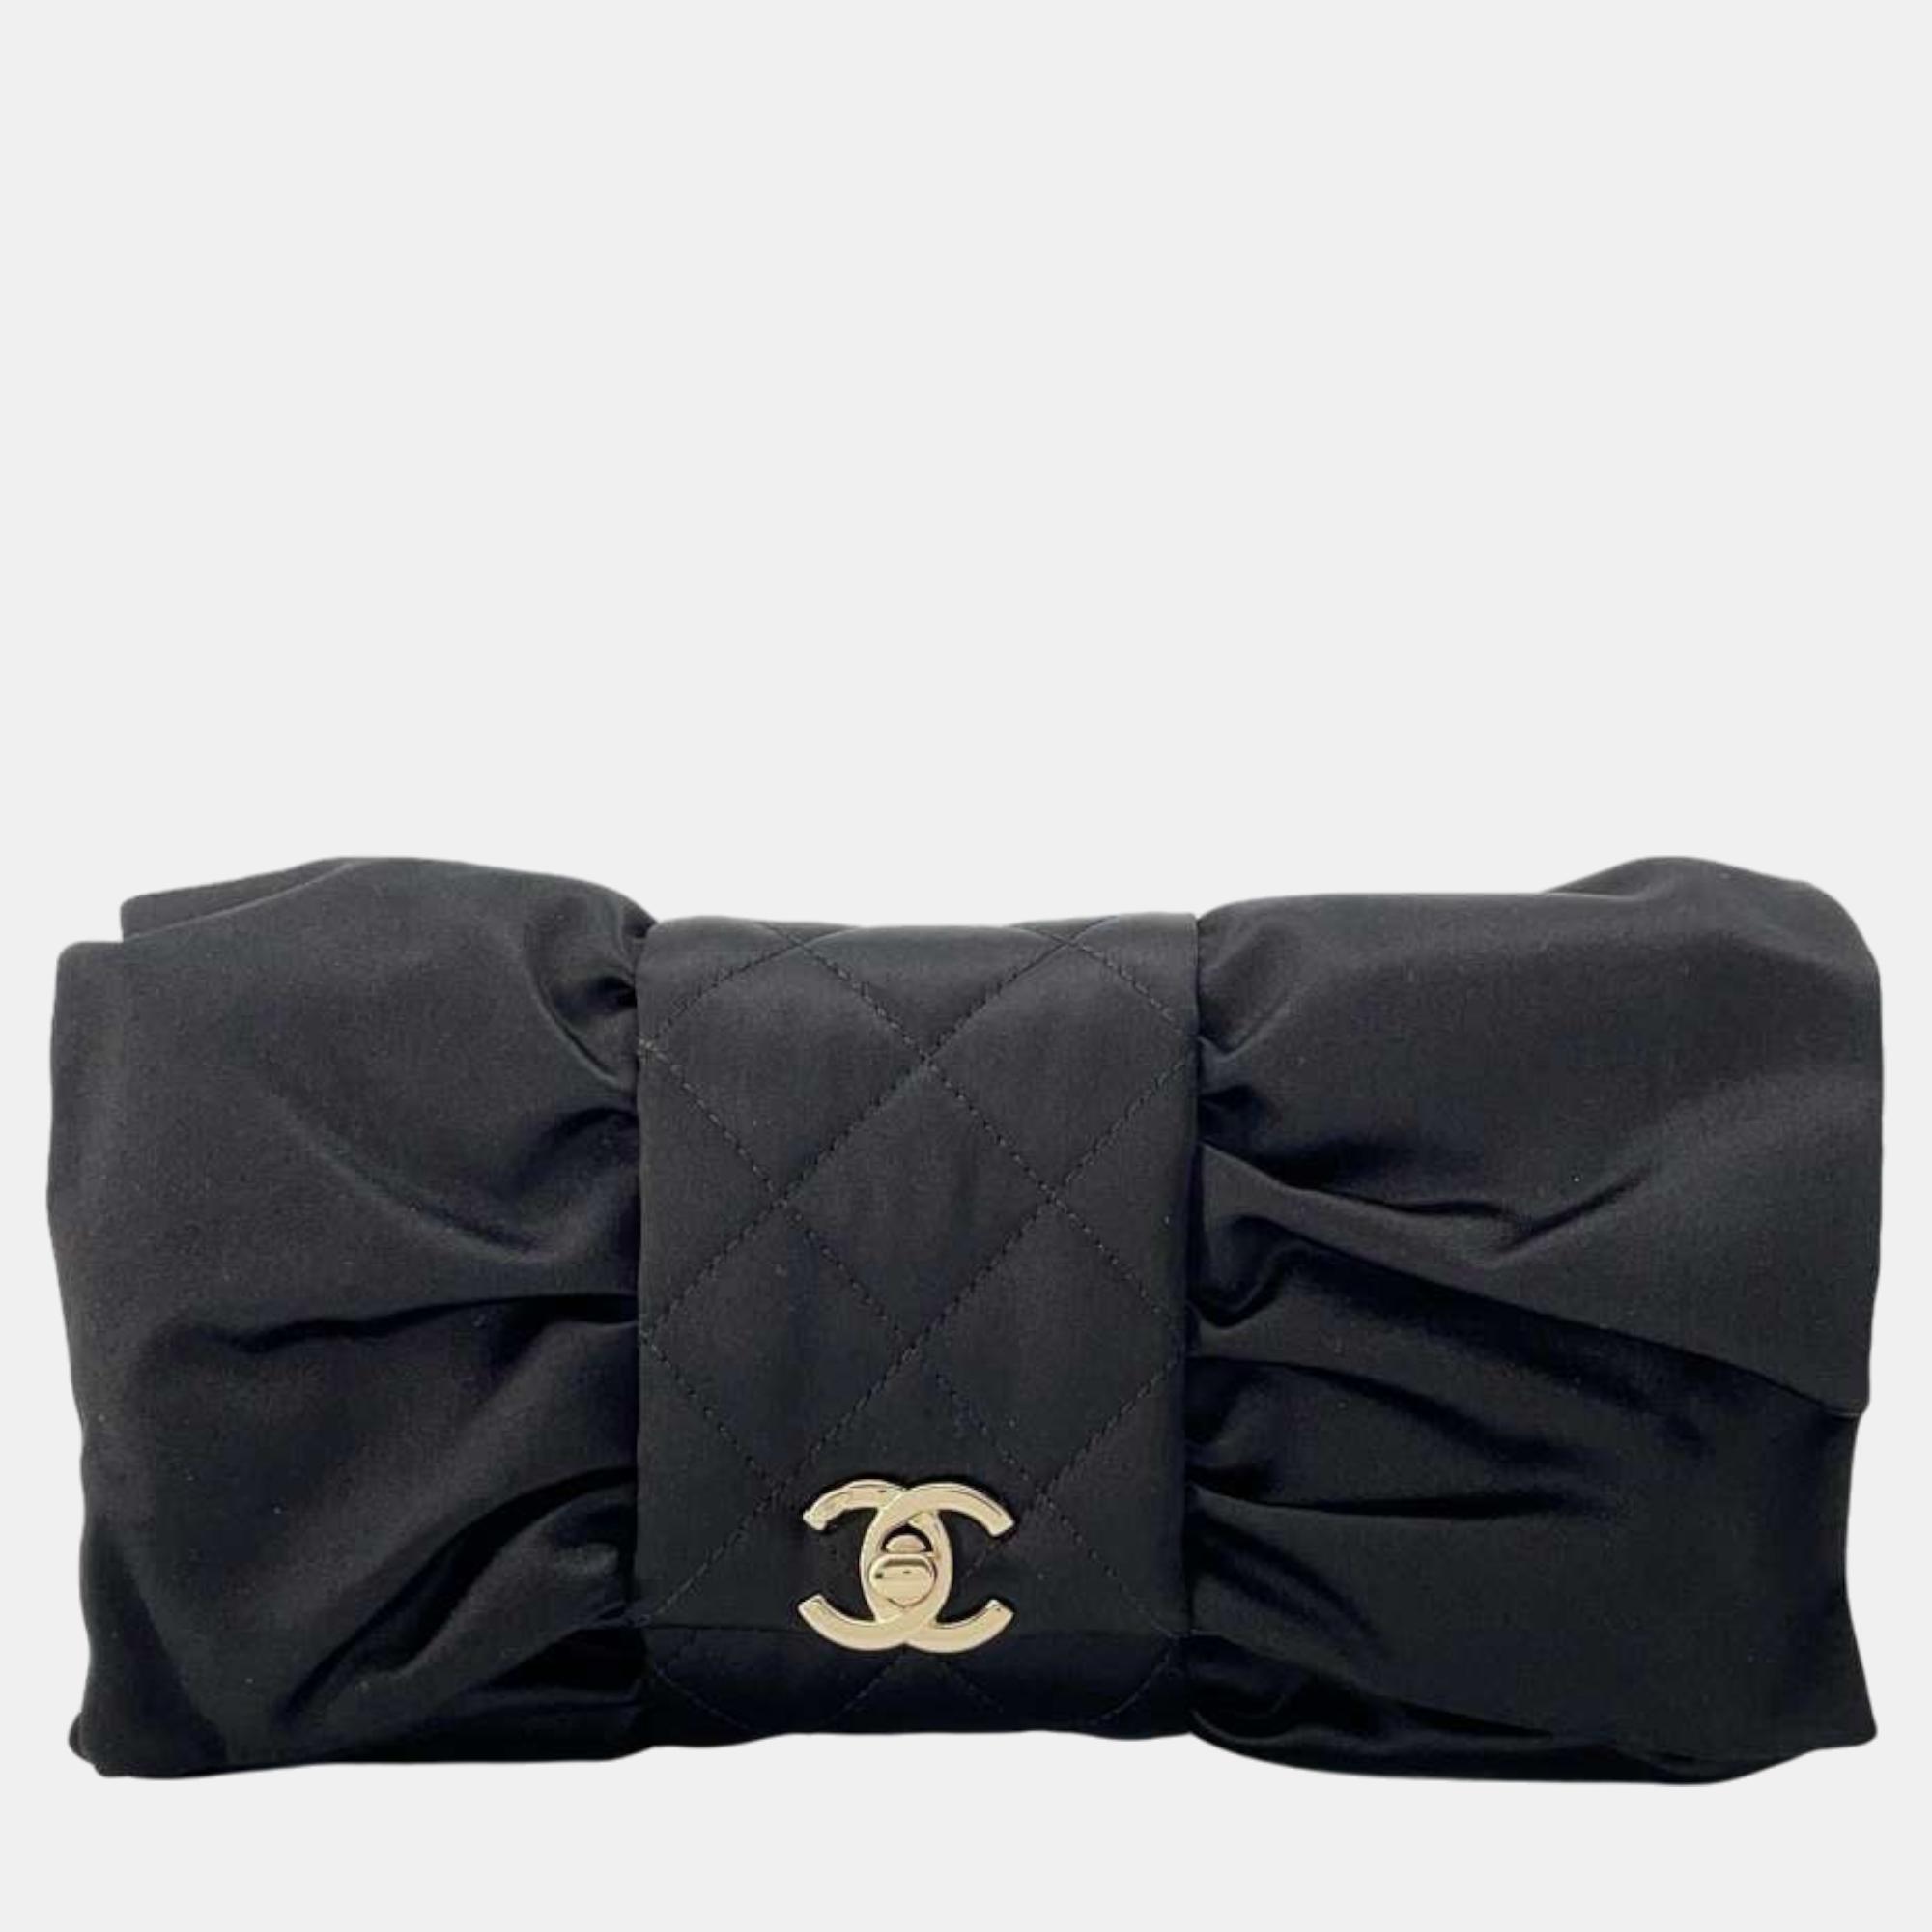 Chanel black satin chain shoulder bag